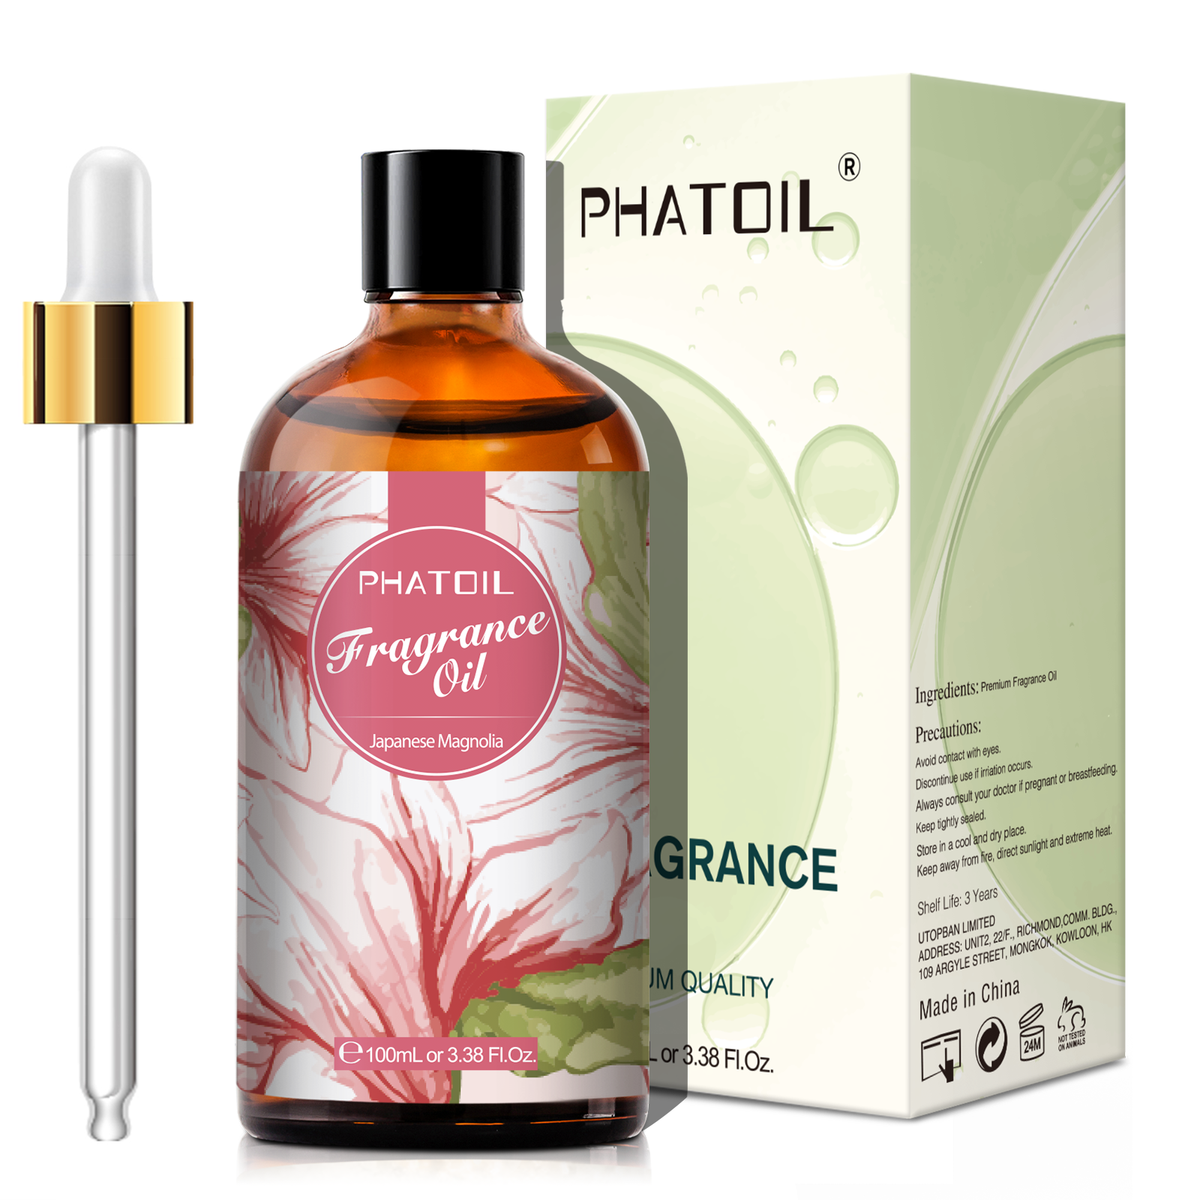 Japanese Magnolia Fragrance Oil-3.38Oz-Package-PHATOIL